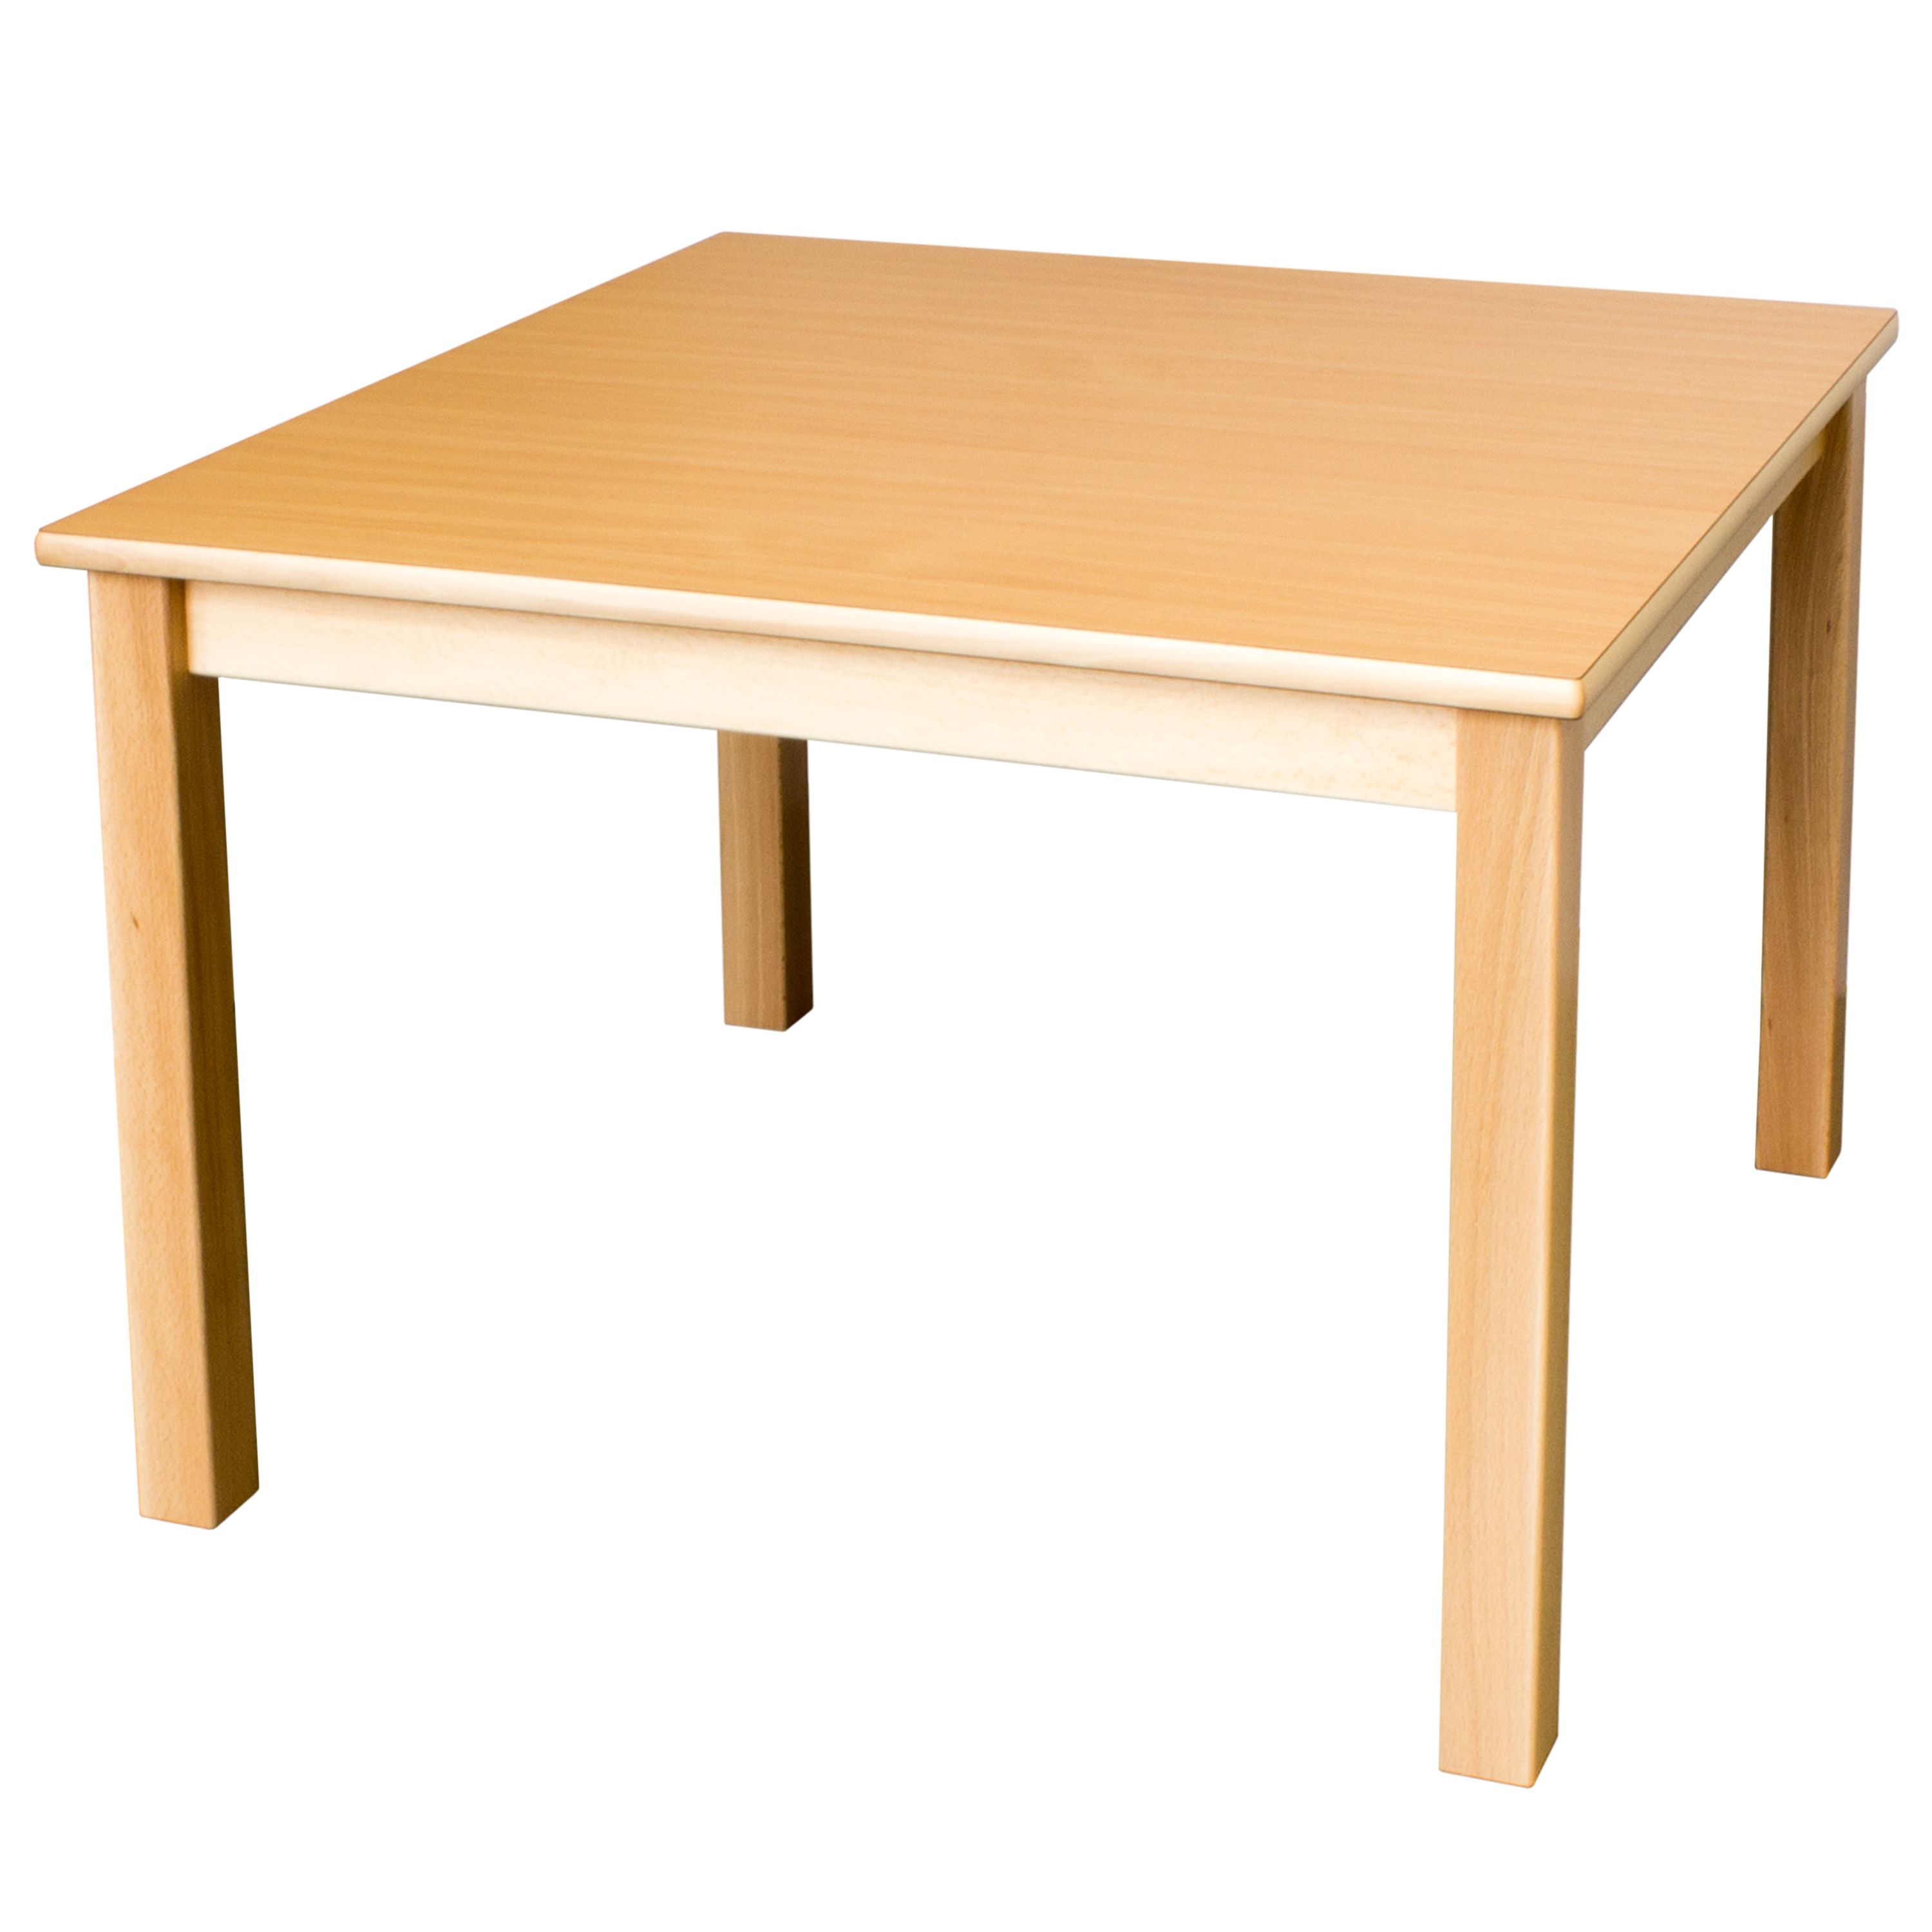 Quadrattisch in der Größe, 80 x 80 cm, Tischhöhe 52 cm